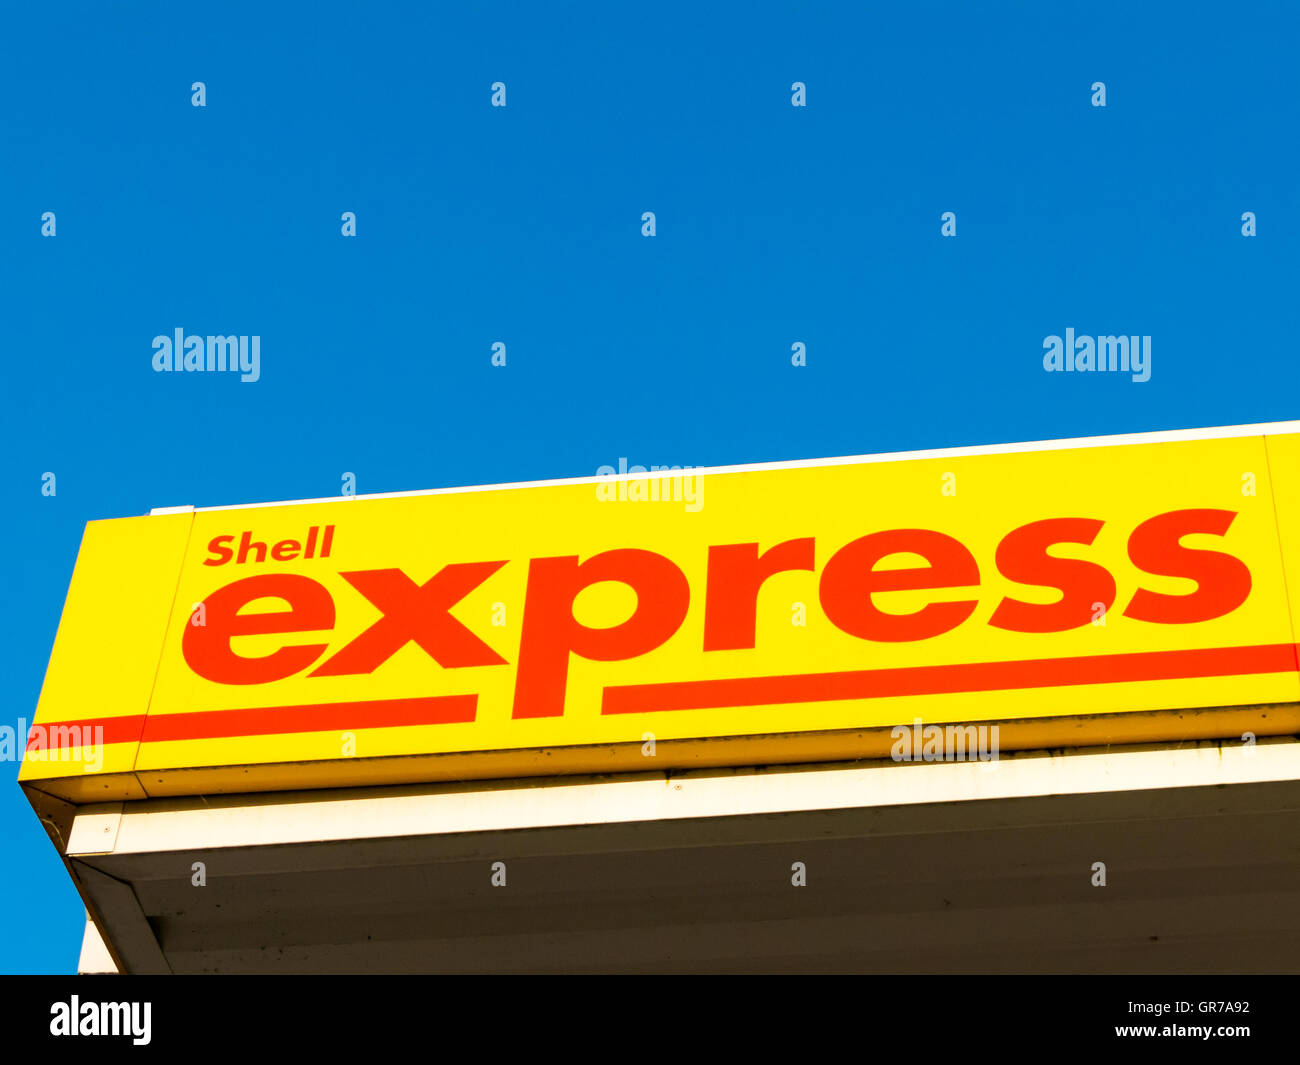 Shell express Marke der Tankstelle von Royal Dutch Shell multinationalen Öl- und Gasfirma, Niederlande Stockfoto